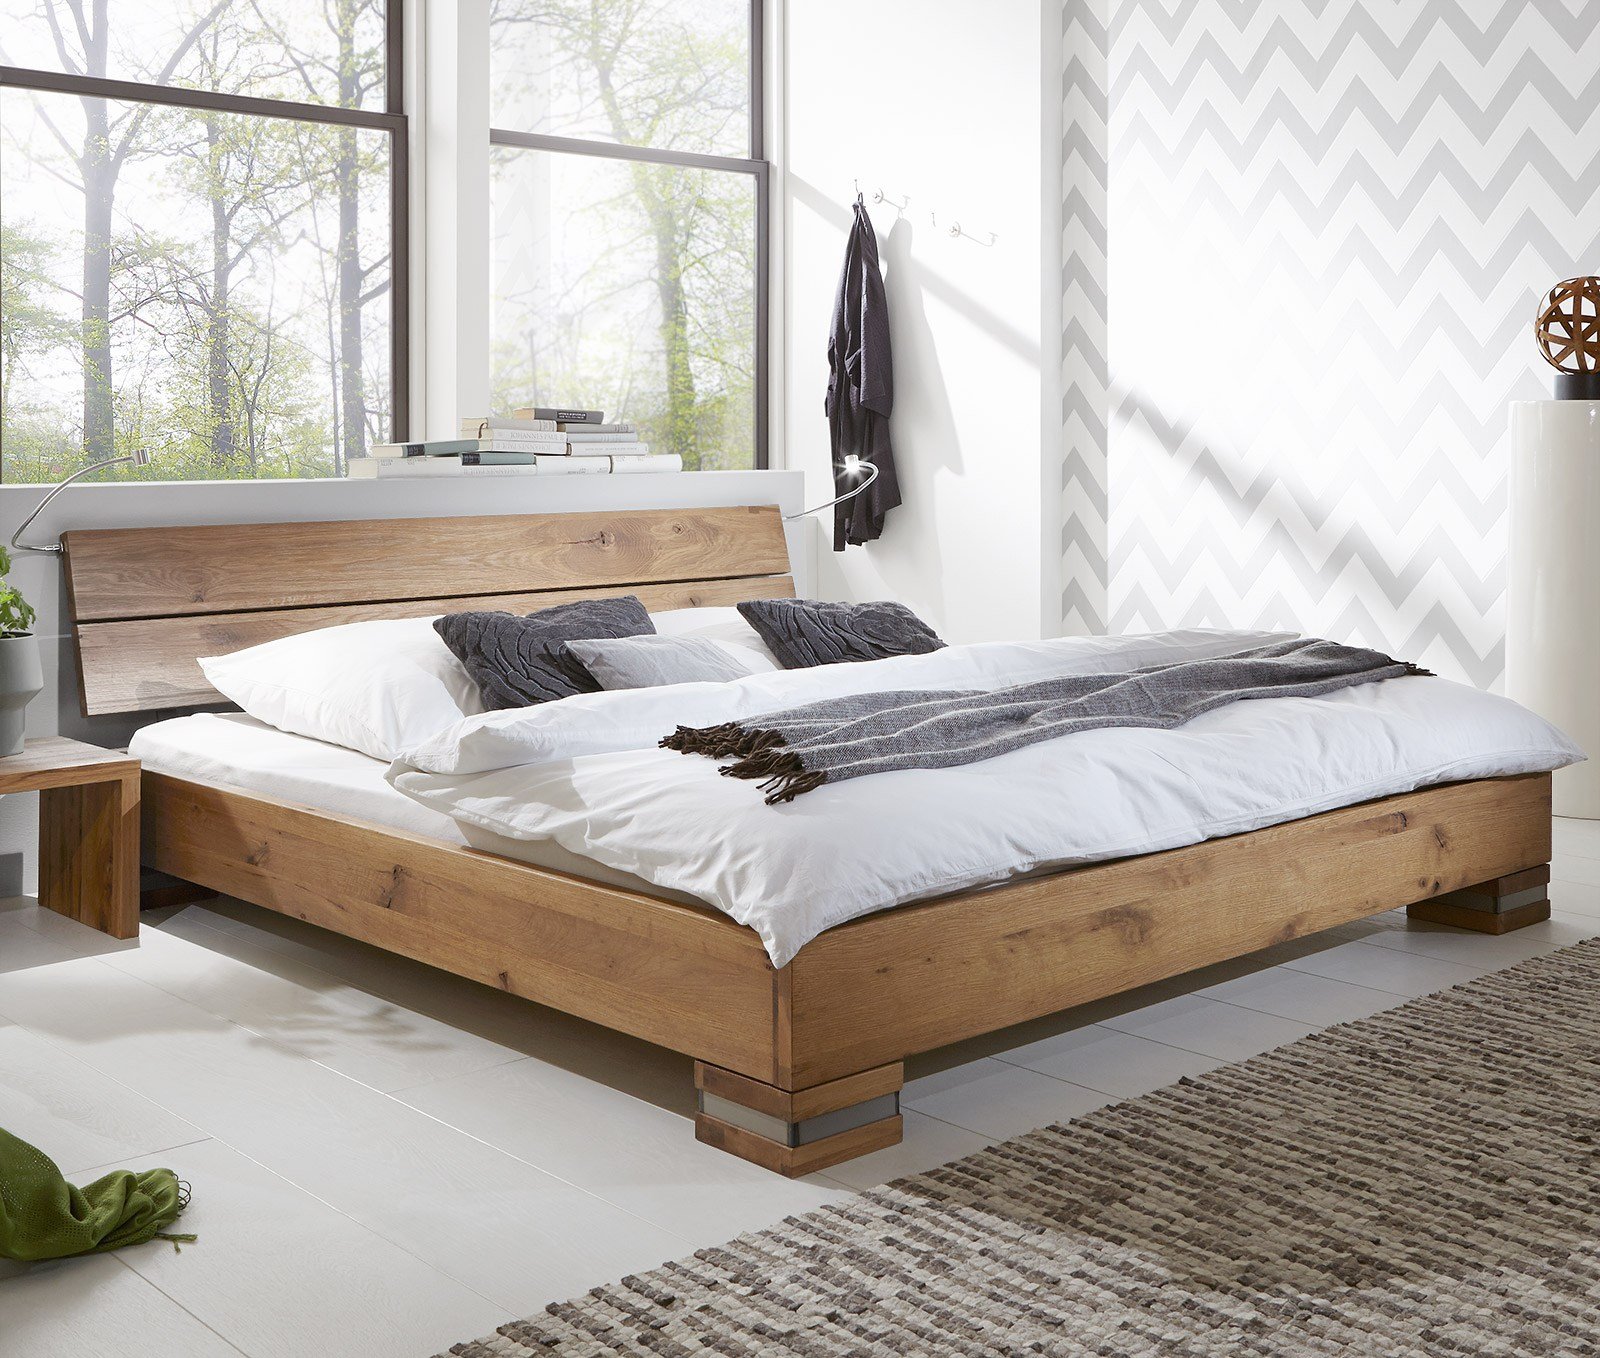 Деревянная кровать в стиле эко-стиля фото